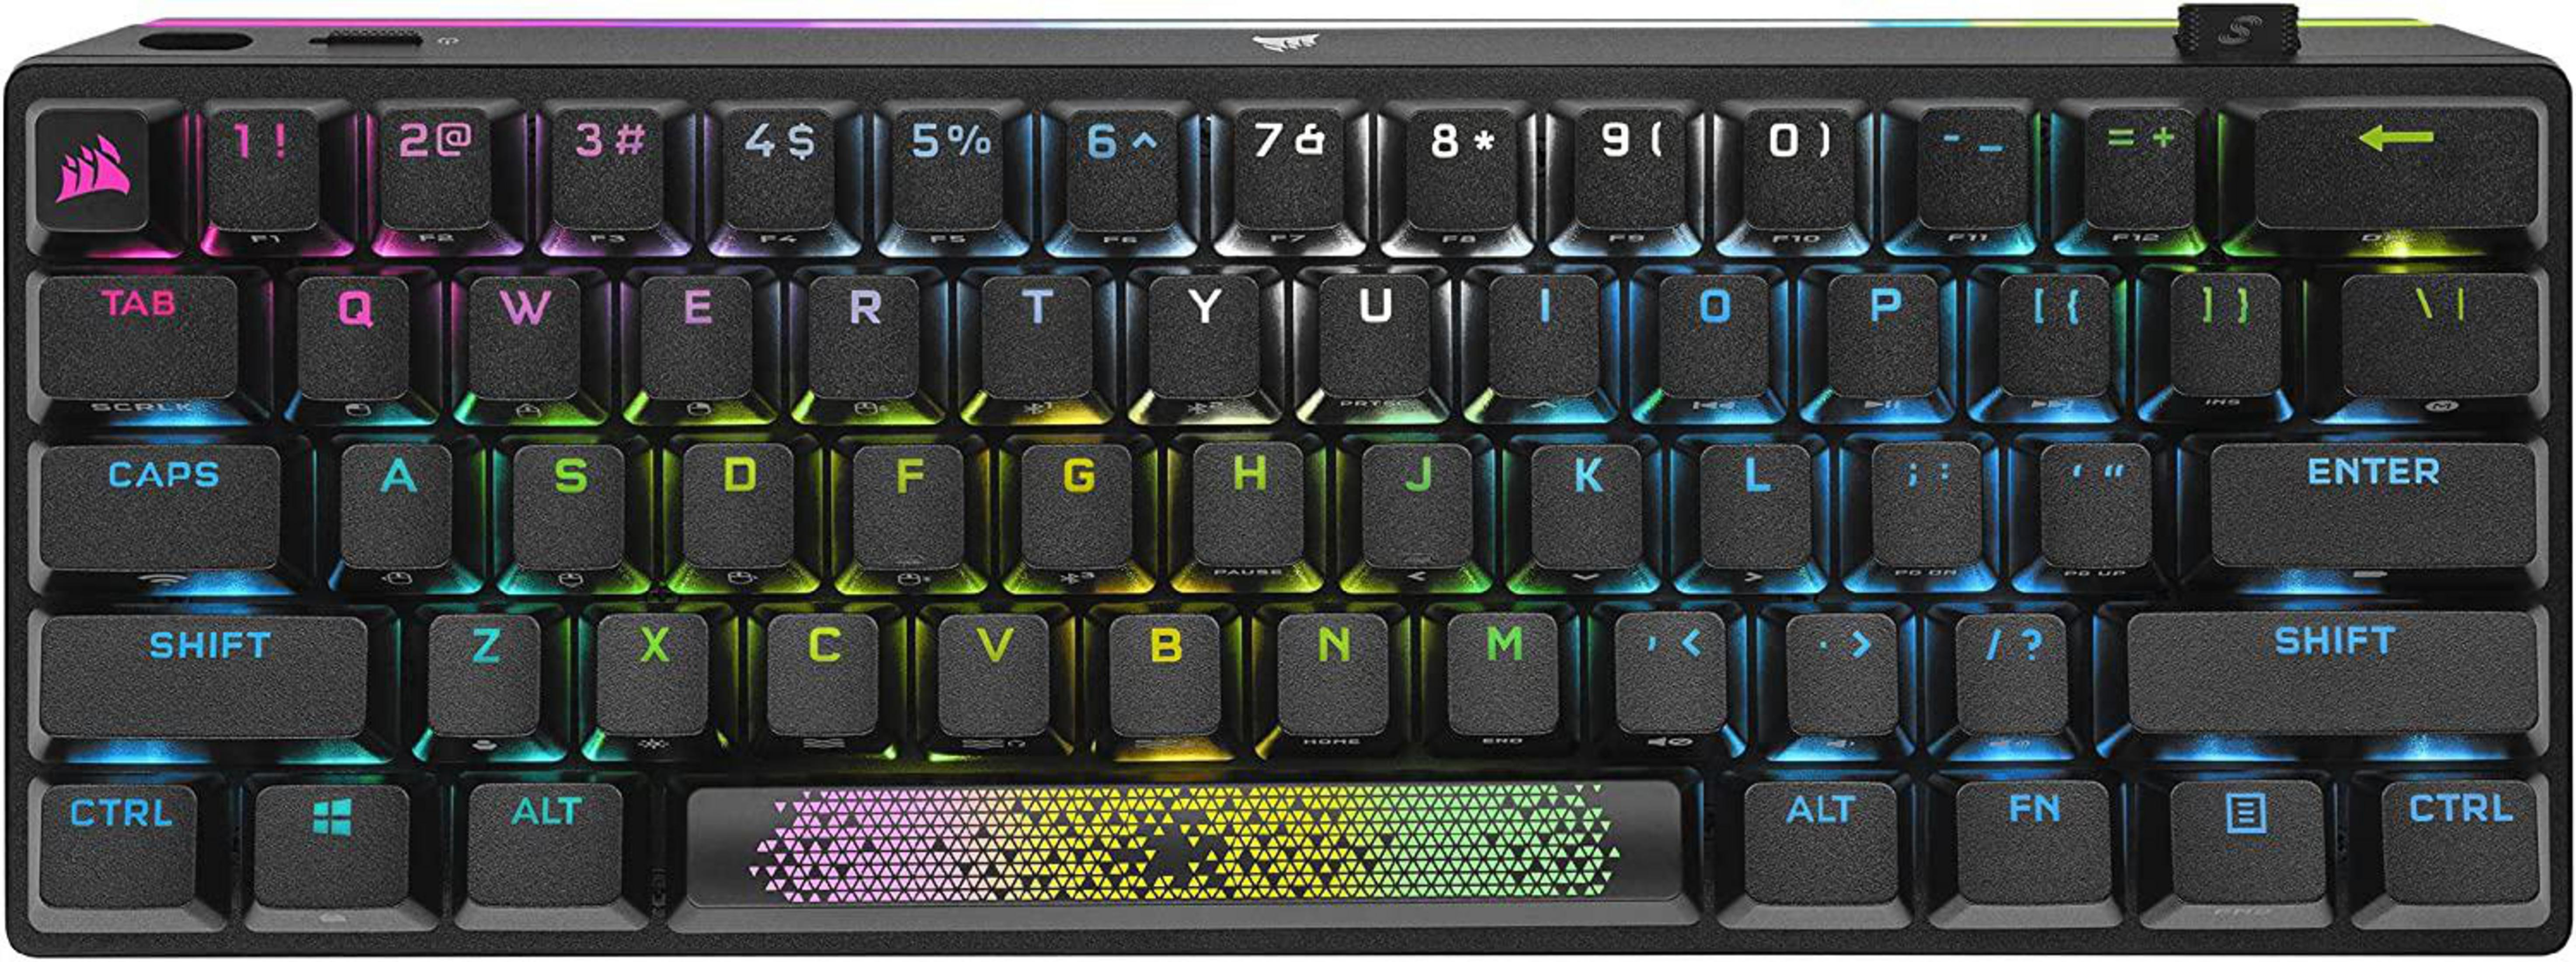 MECHANICAL, PRO MX RGB CH-9189014-DE WIRELESS CORSAIR Mechanisch, MINI Tastatur, K70 Cherry Speed